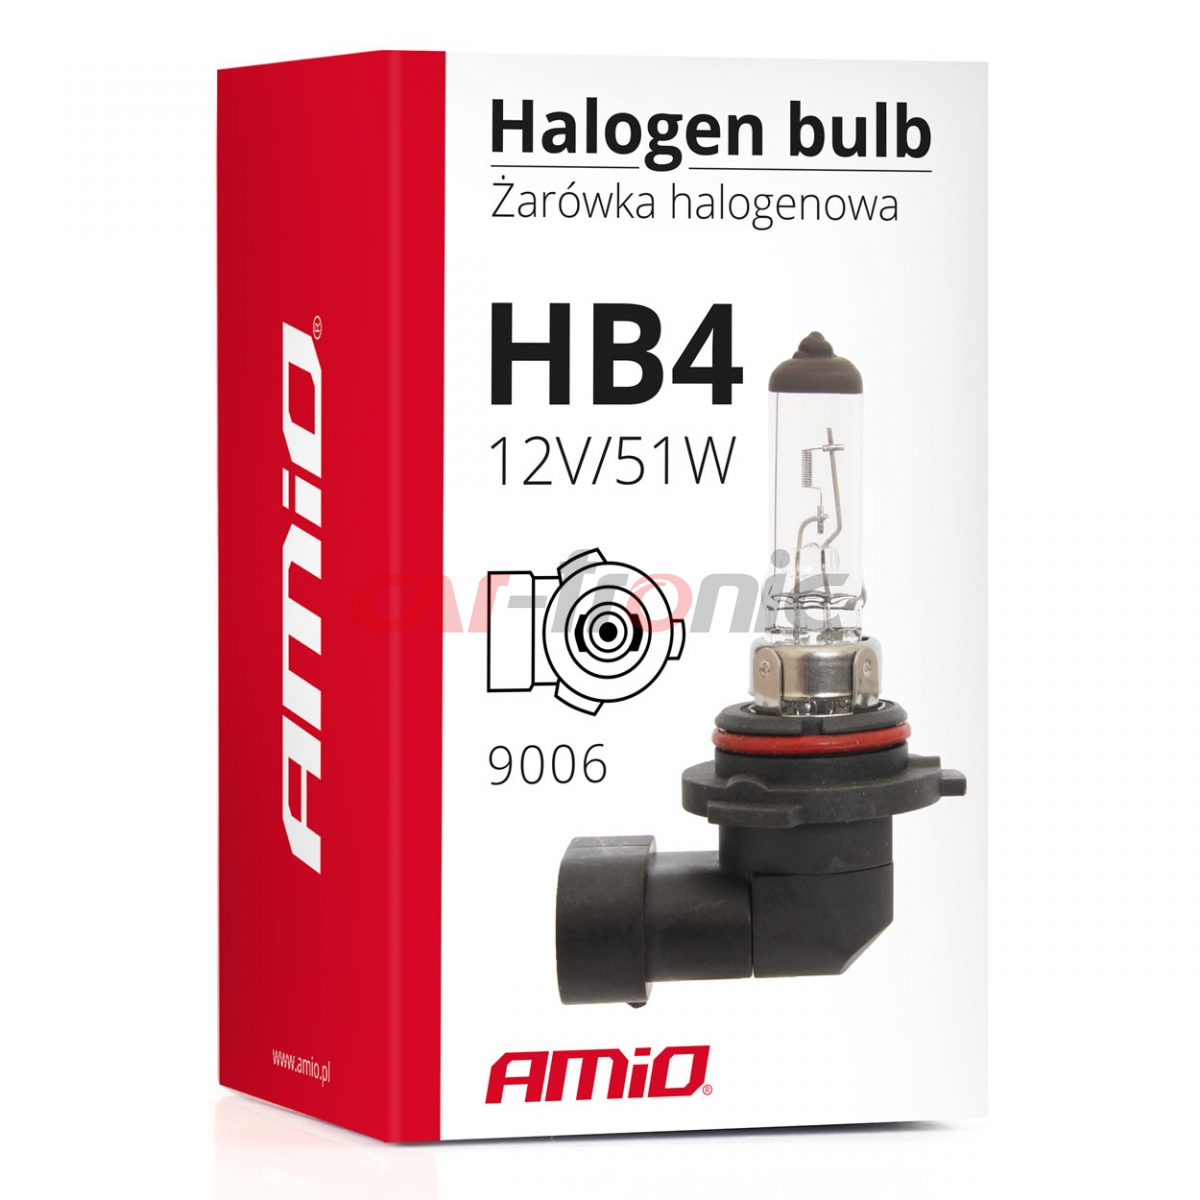 Żarówka halogenowa HB4 12V 51W 9006 AMIO-01480